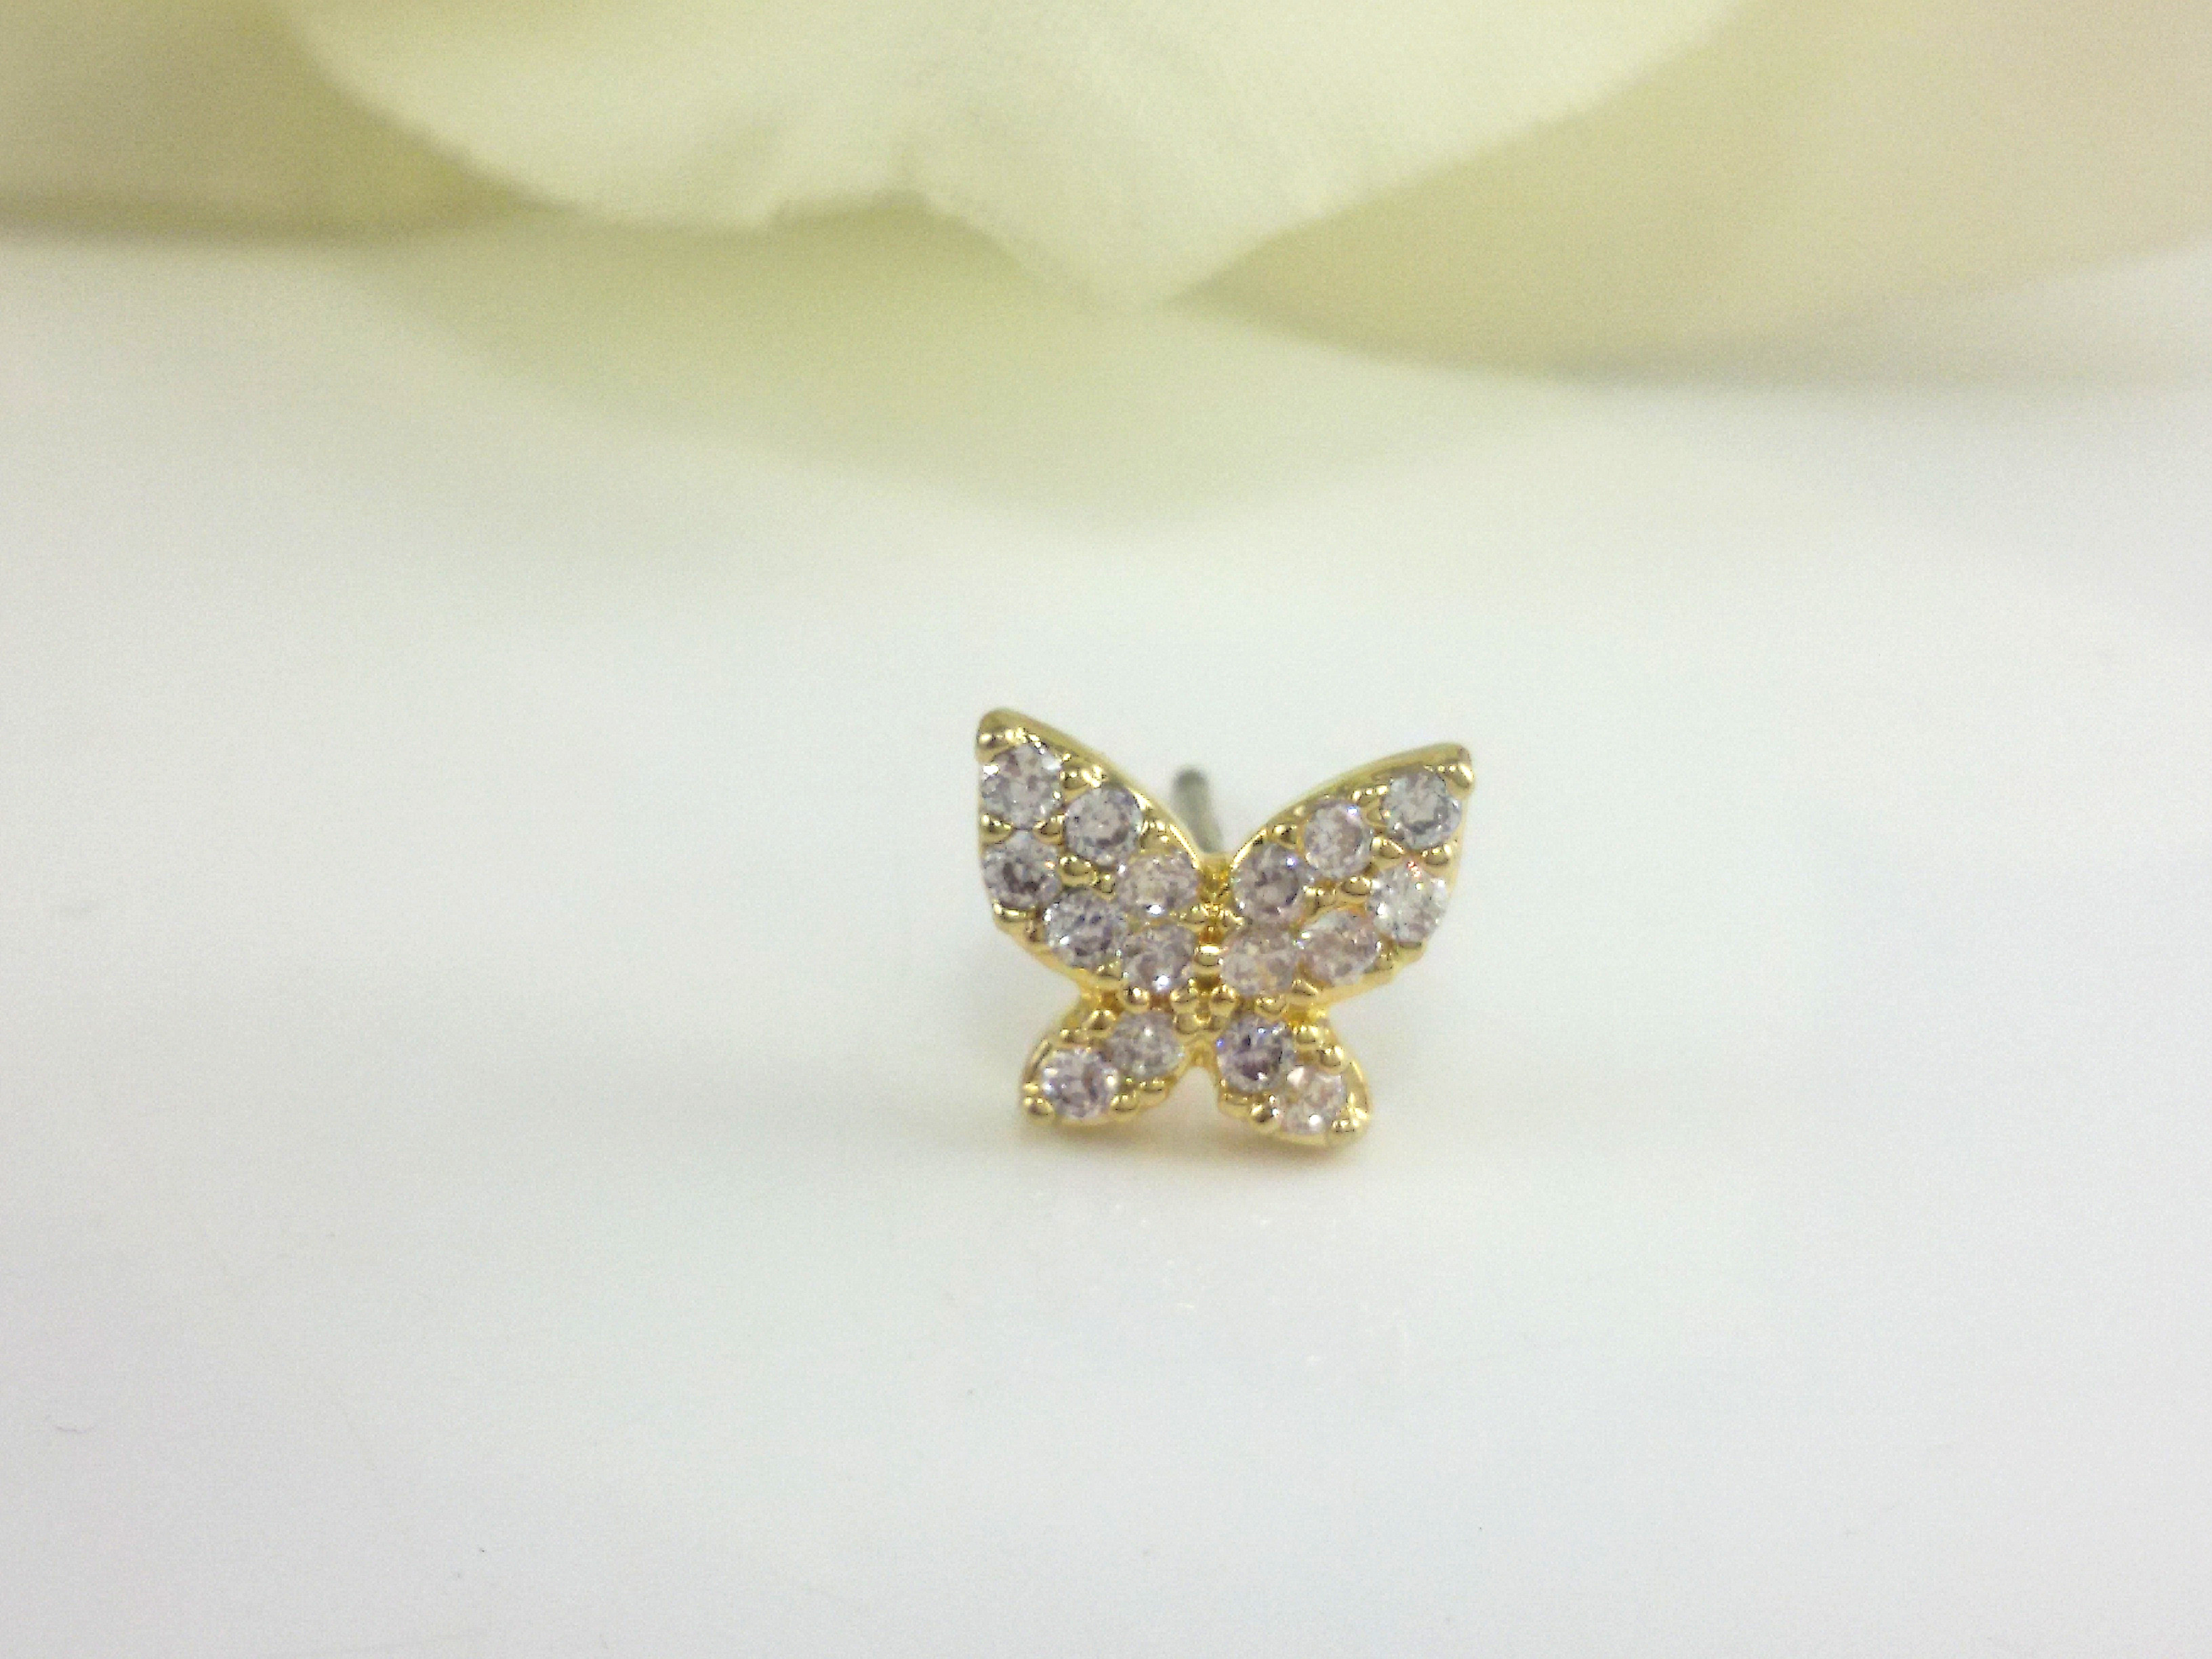 The butterfly zircon earrings